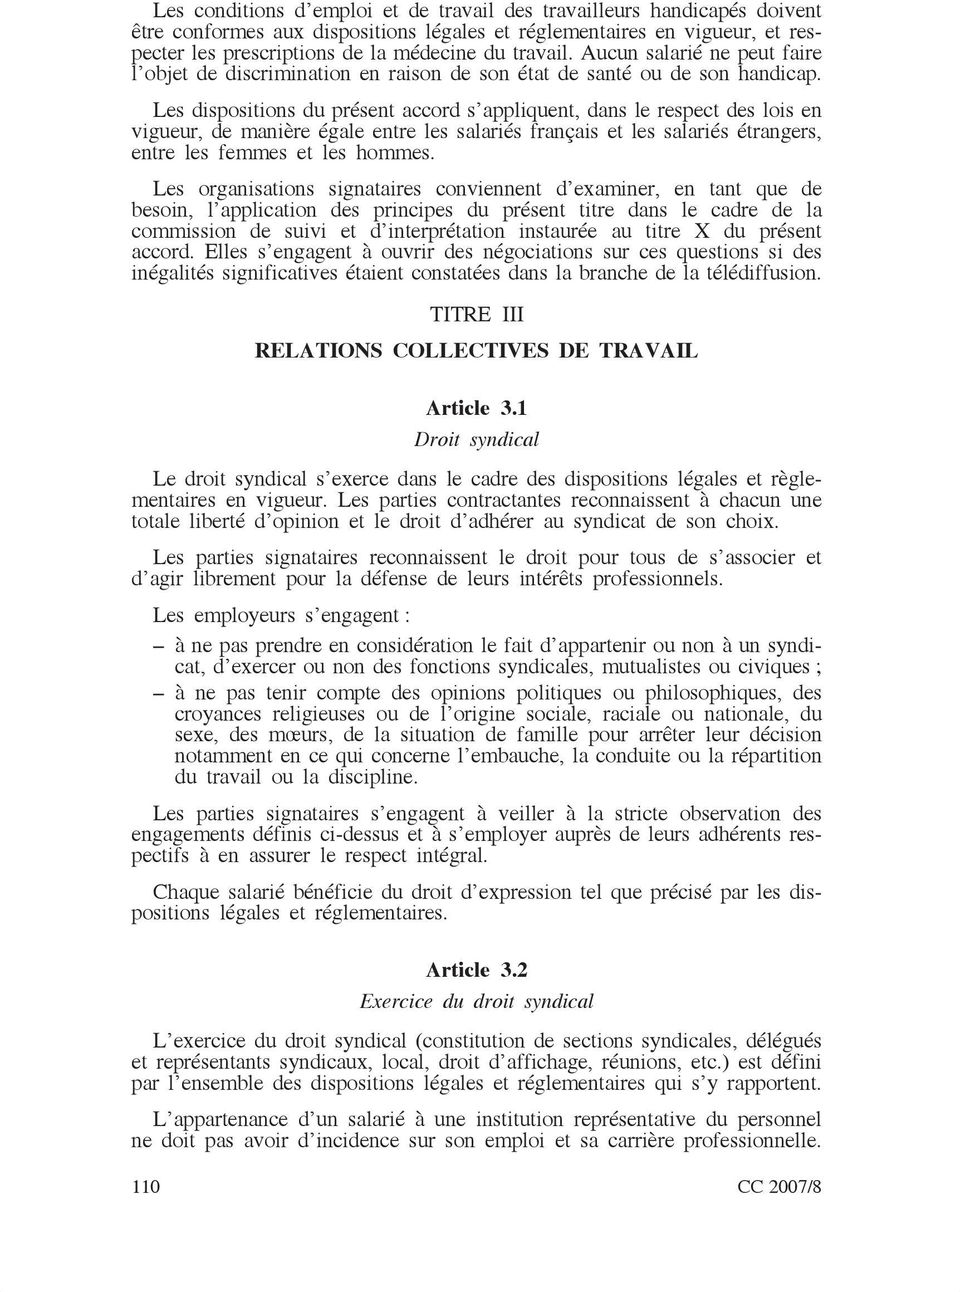 Les dispositions du présent accord s appliquent, dans le respect des lois en vigueur, de manière égale entre les salariés français et les salariés étrangers, entre les femmes et les hommes.